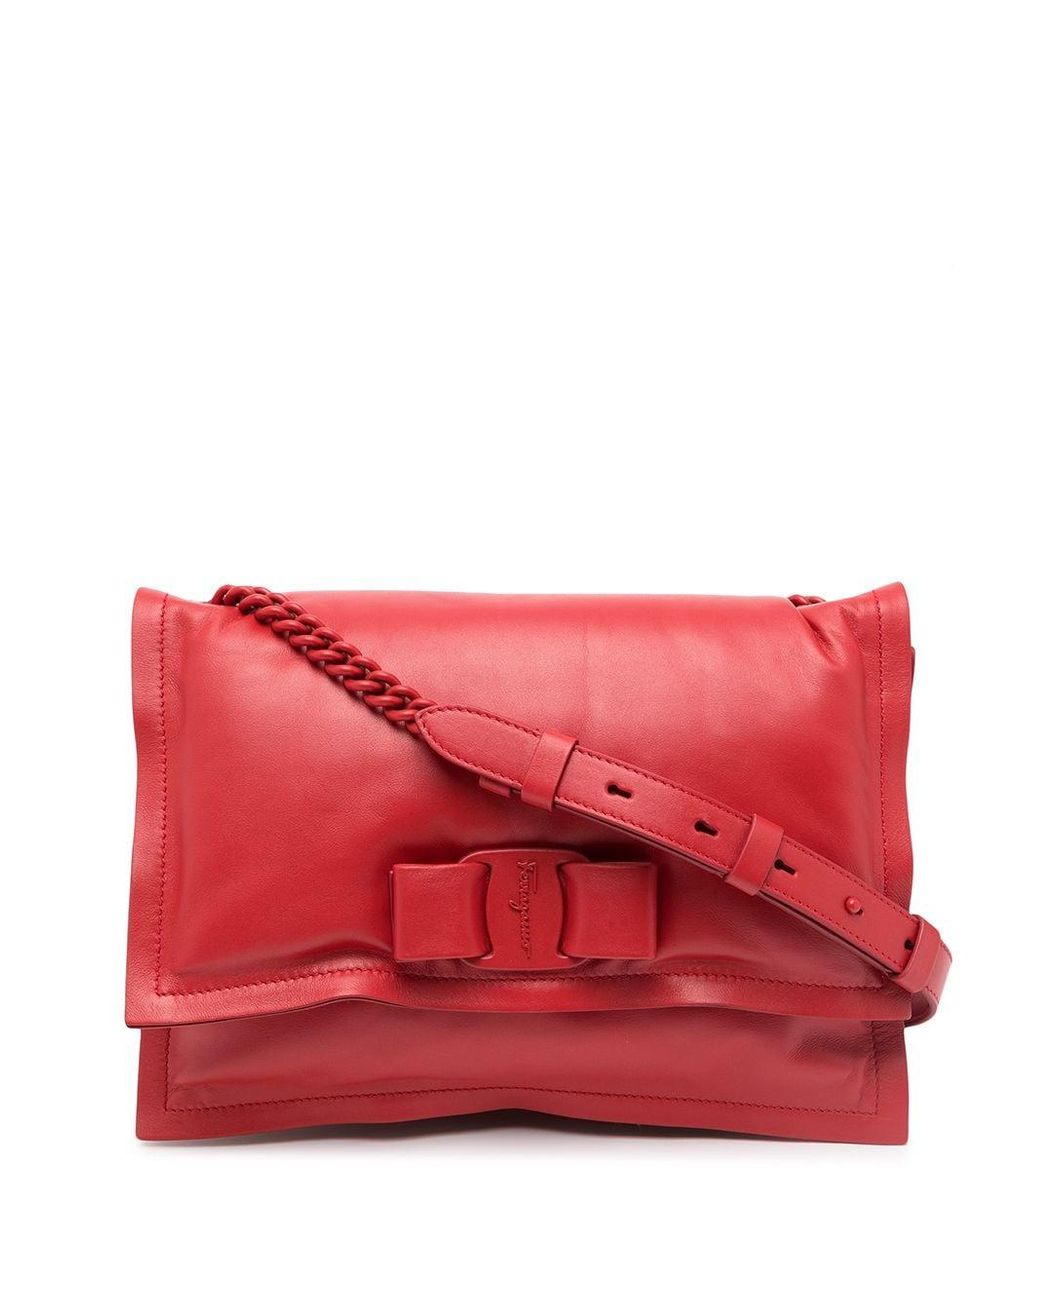 Ferragamo Viva Bow Leather Shoulder Bag in Red - Lyst